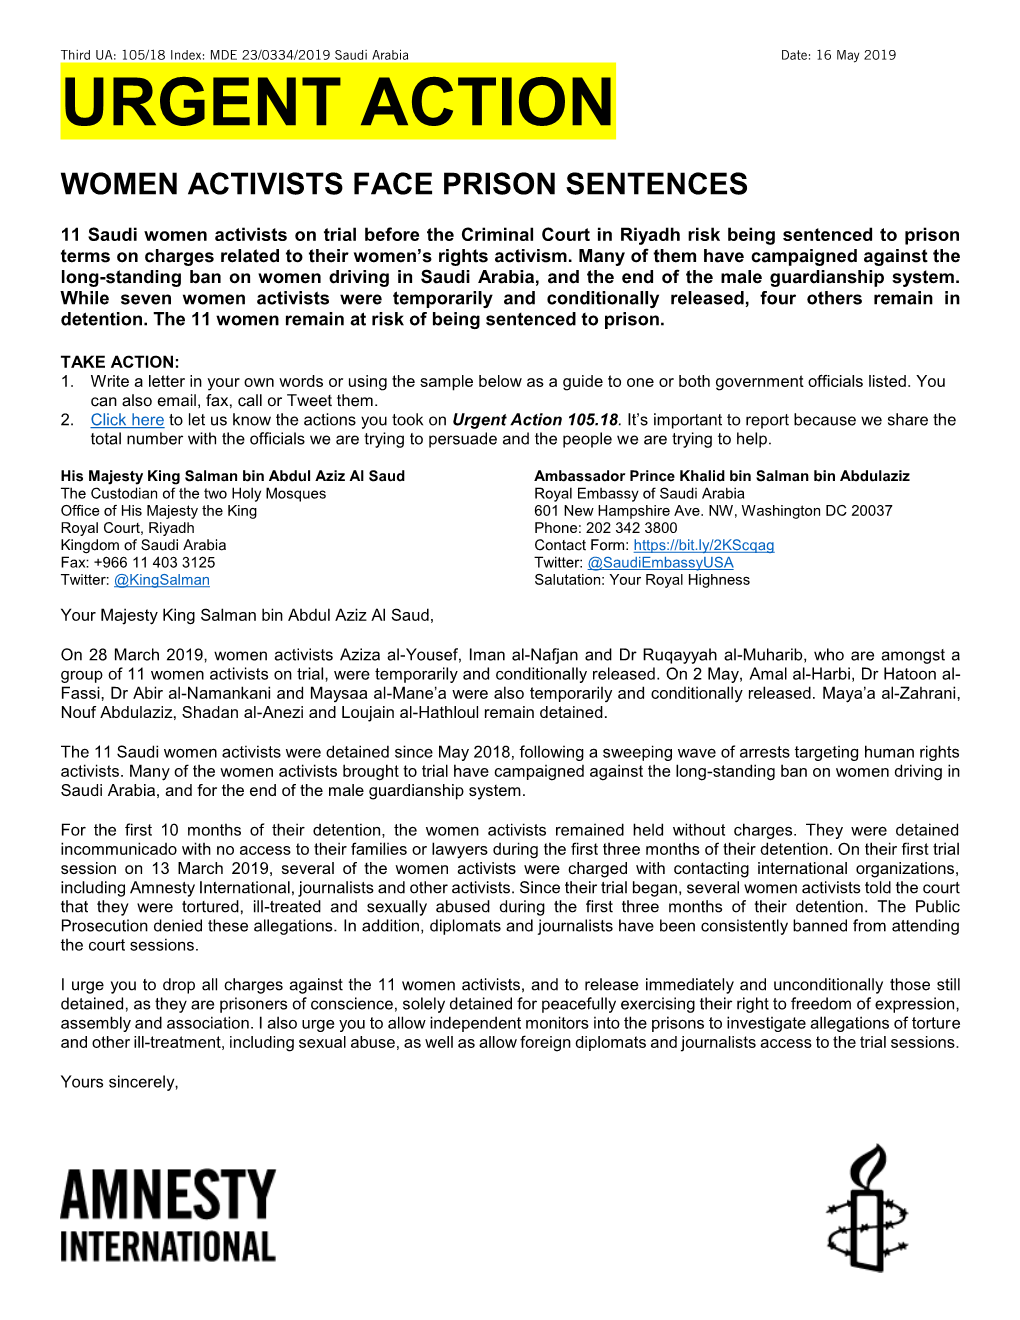 Urgent Action Women Activists Face Prison Sentences